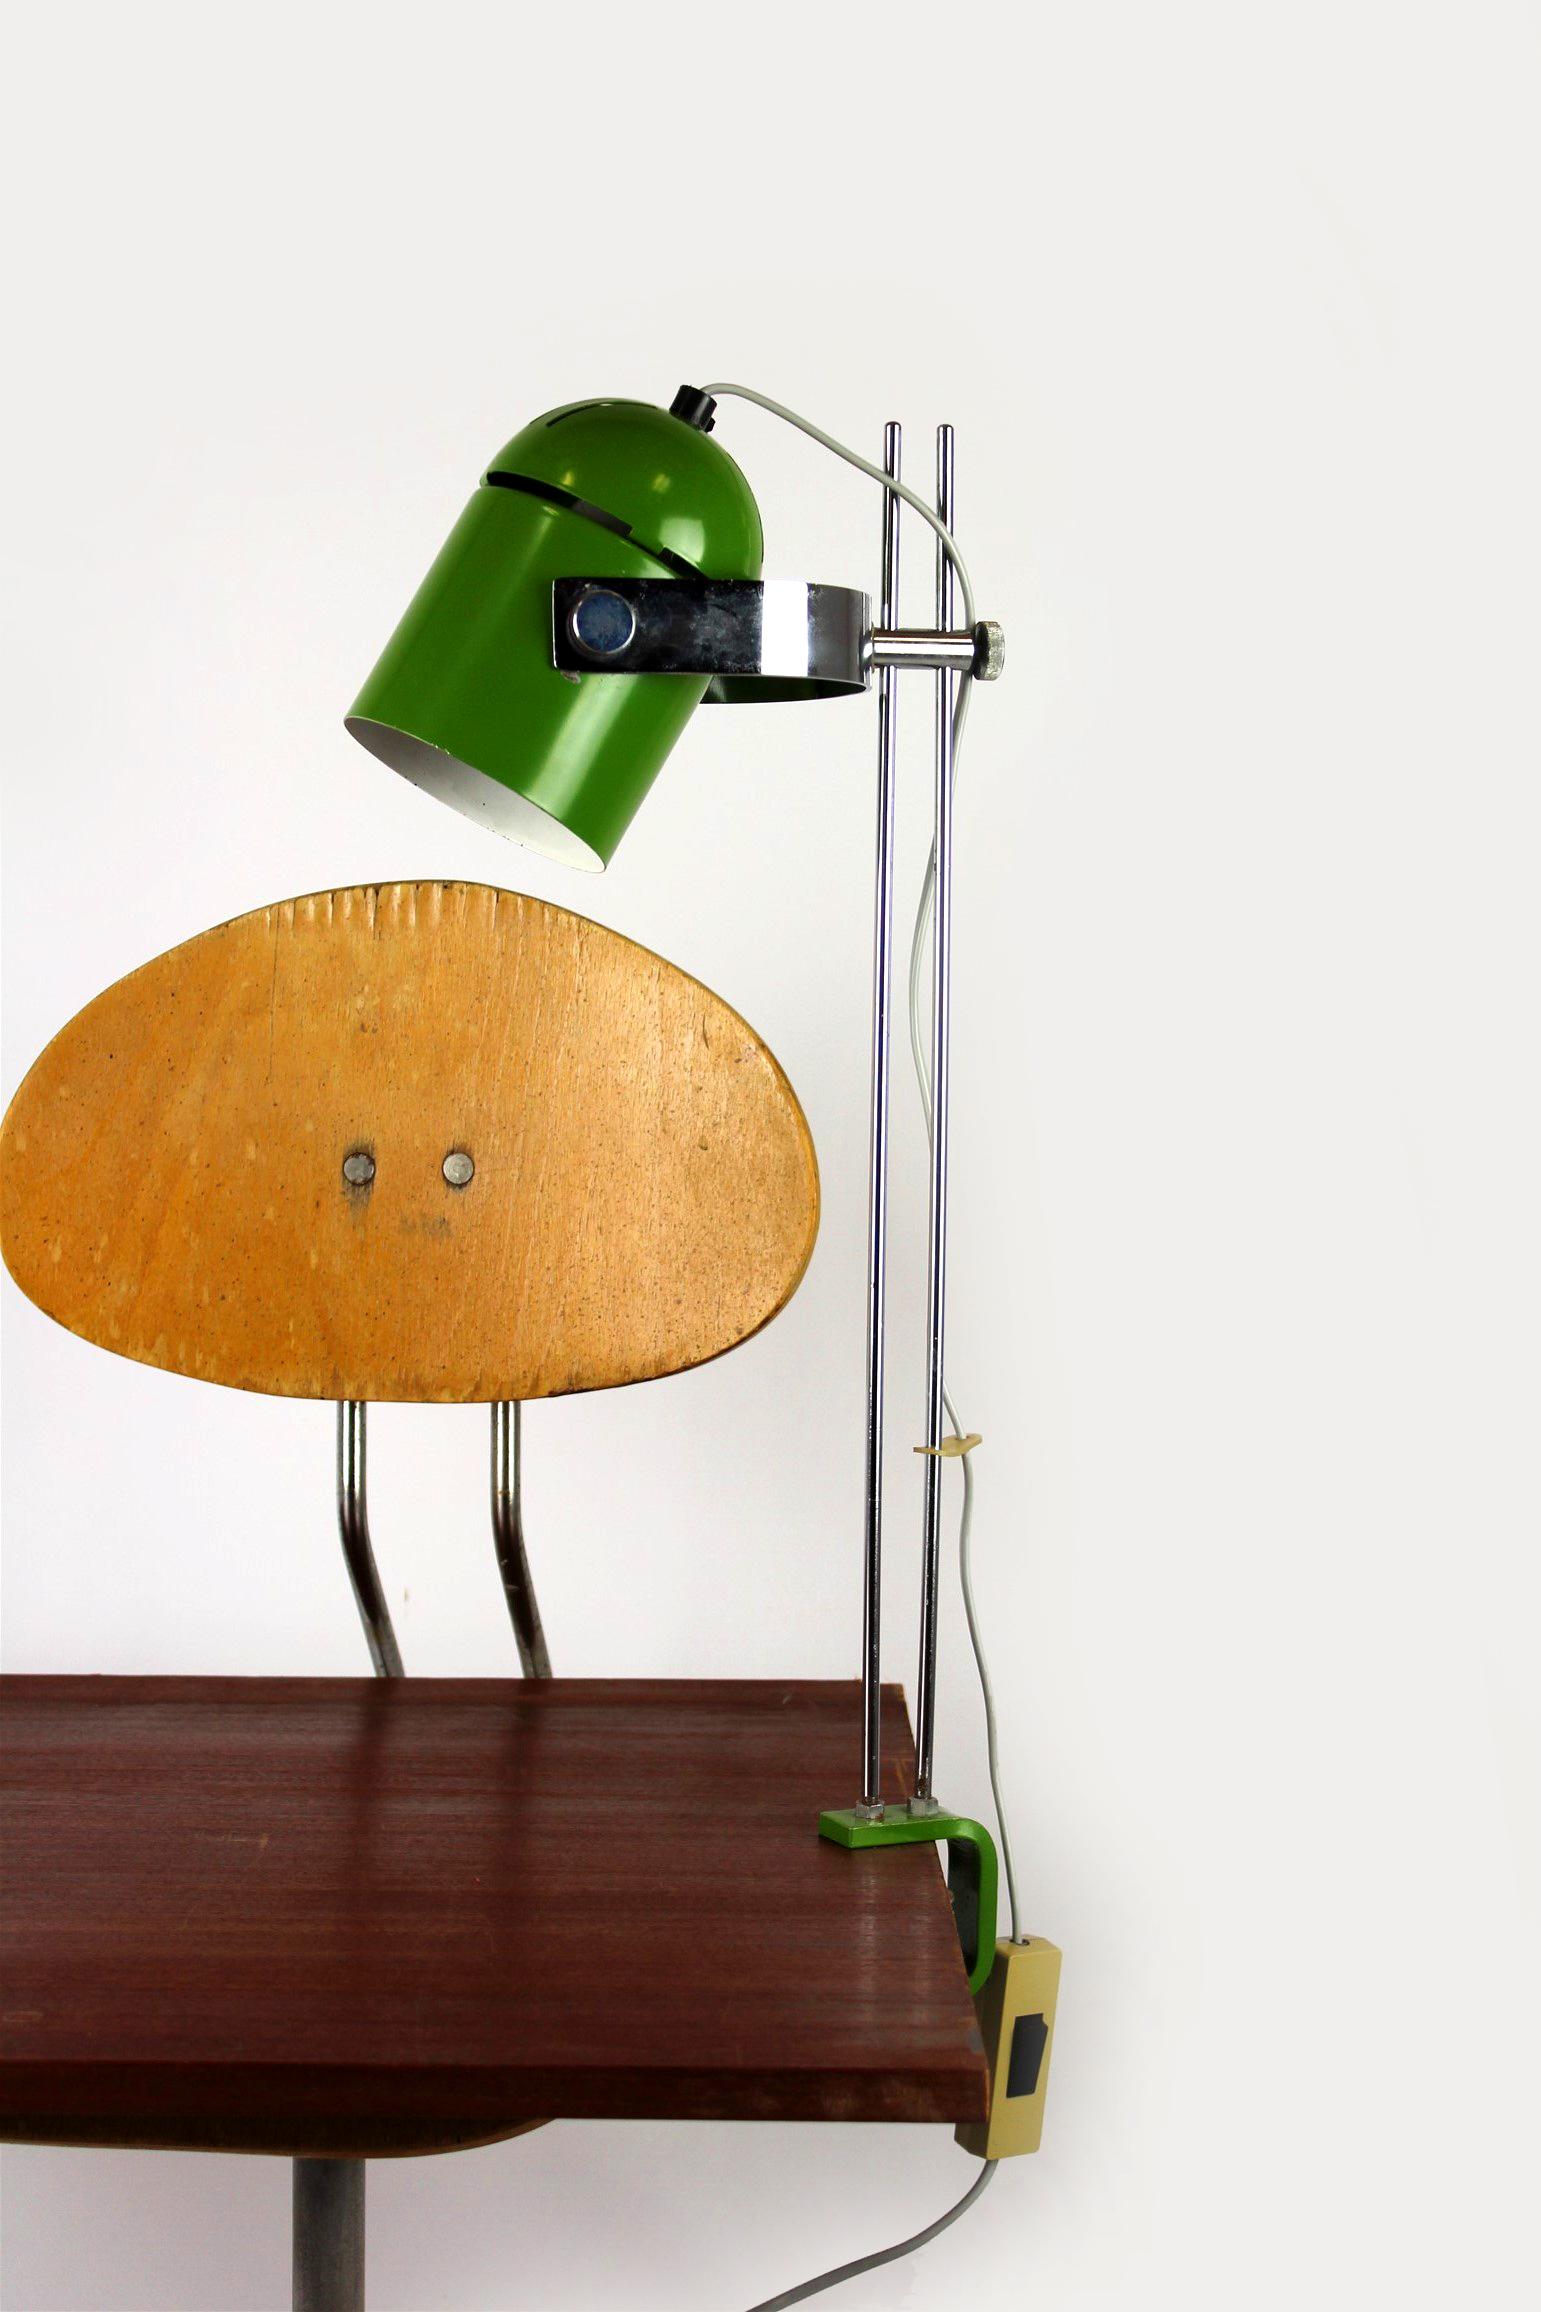 Lampe de table vintage conçue par Stanislav Indra et produite dans les années 1970. La lampe est entièrement fonctionnelle et possède un abat-jour réglable.